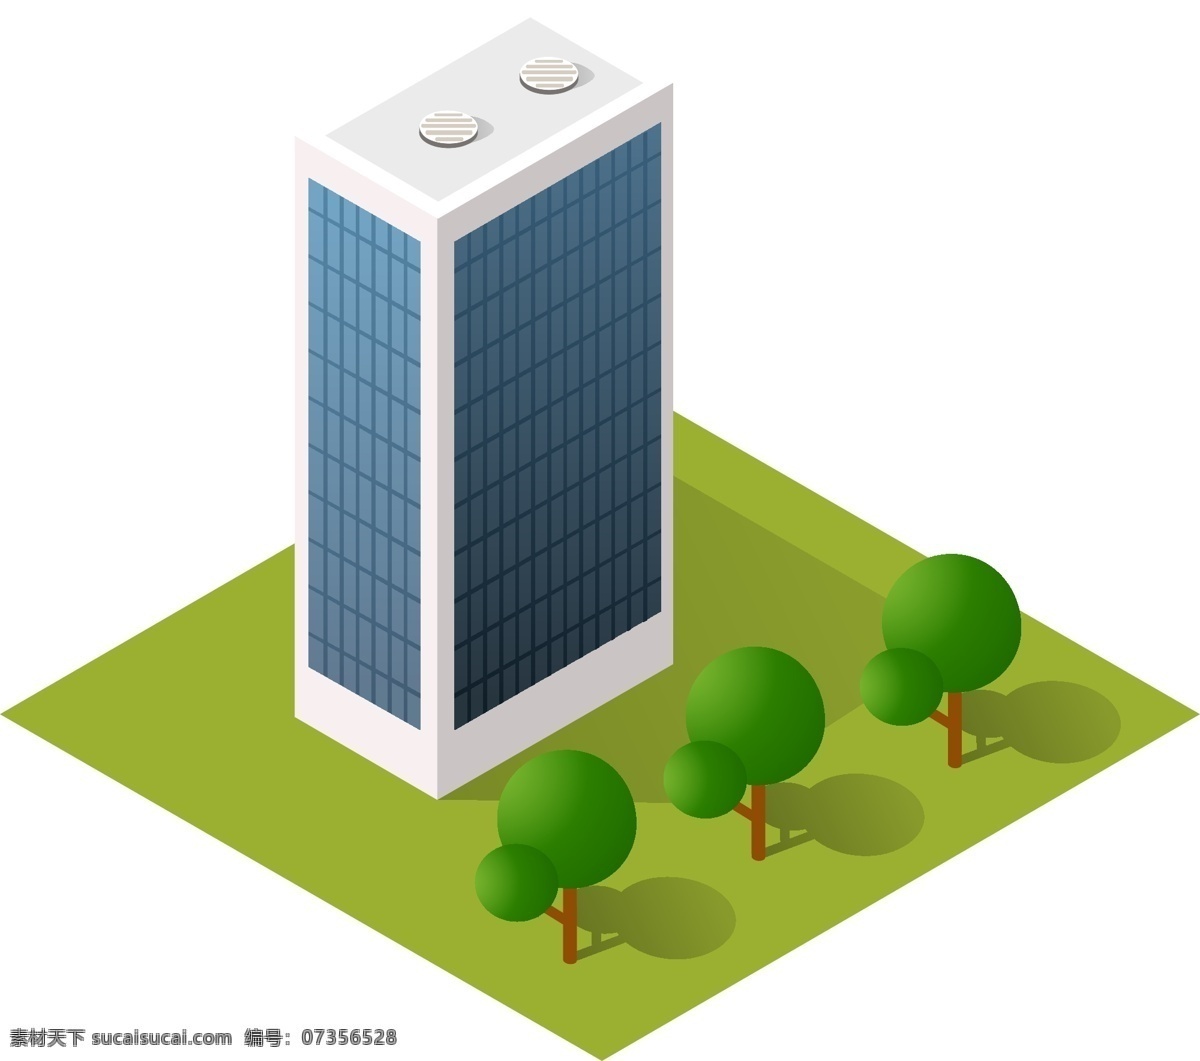 2.5d 城市 大厦 树 建筑元素 d 创意 建筑 小 元素 可商用